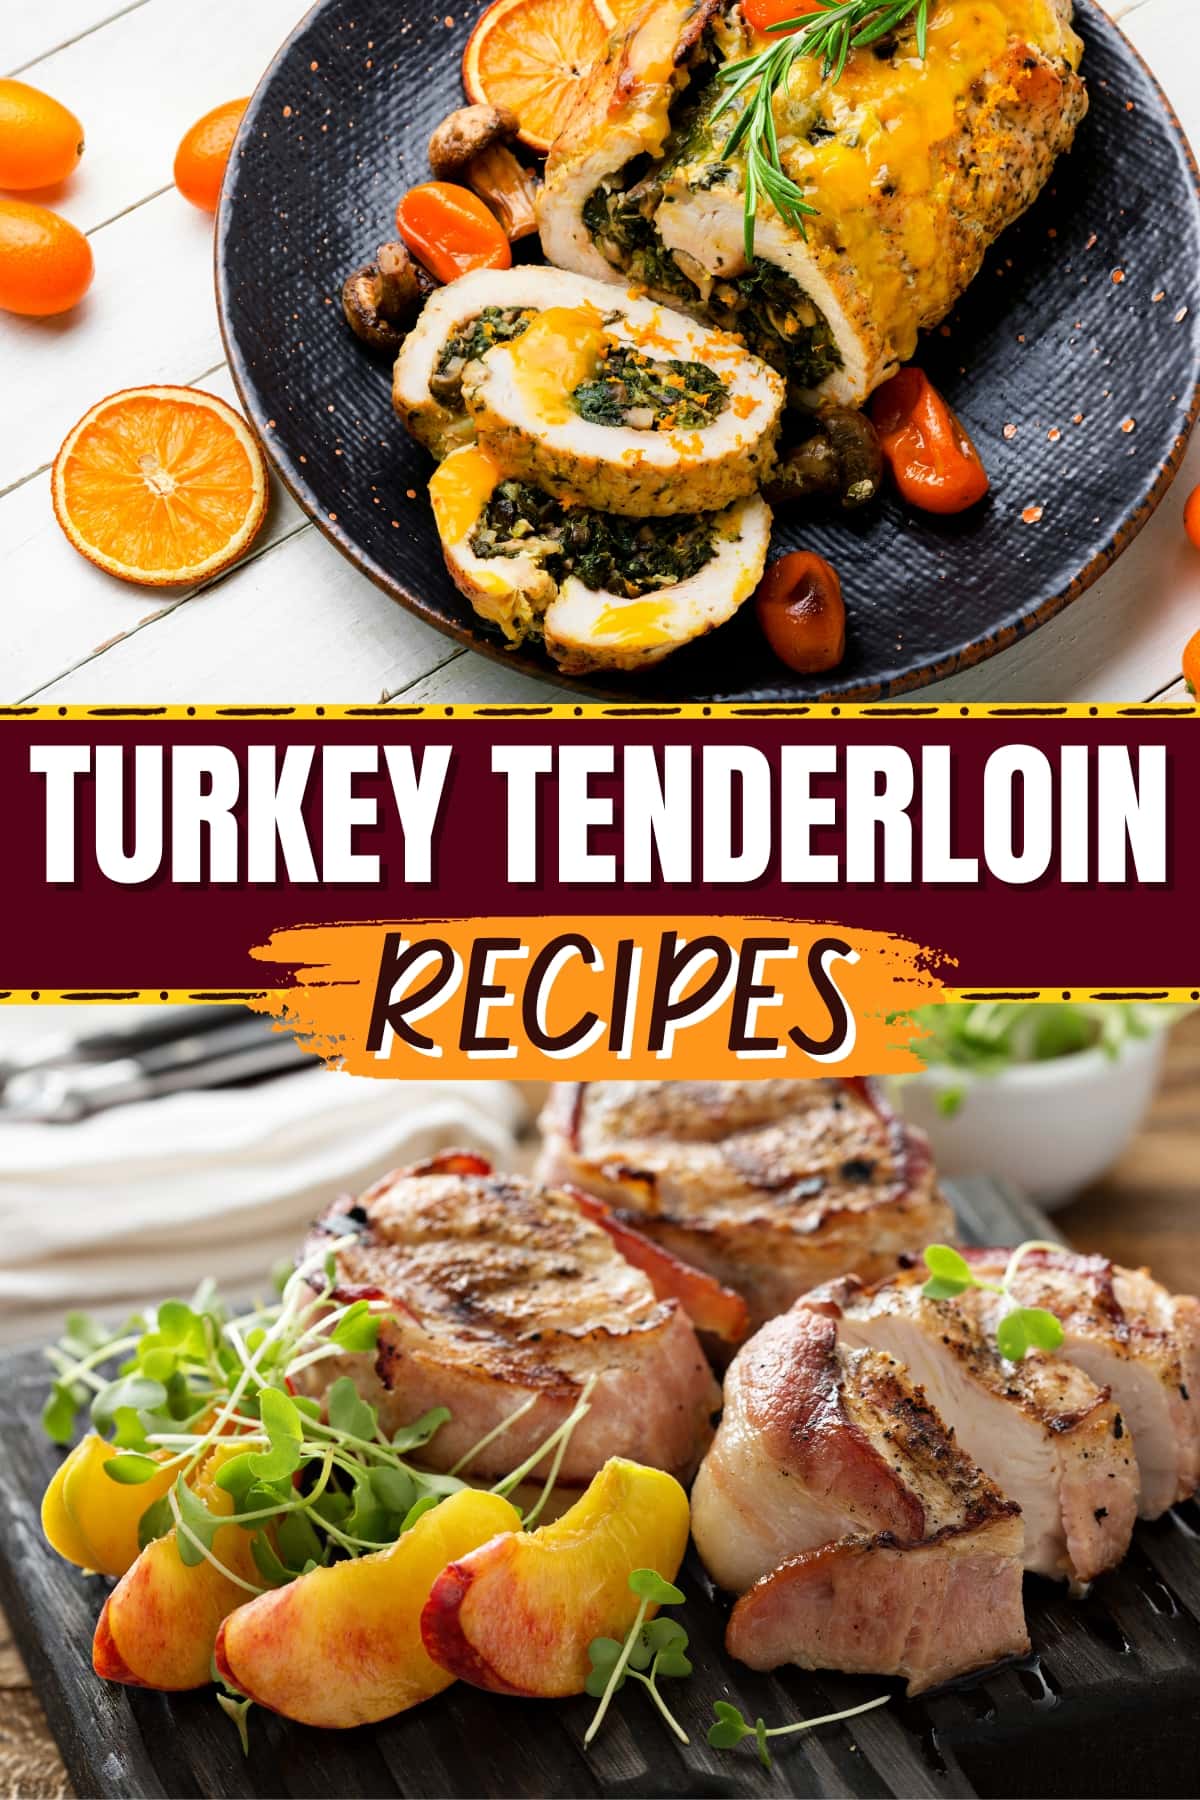 23 Turkey Tenderloin Recipes to Try Tonight - Insanely Good